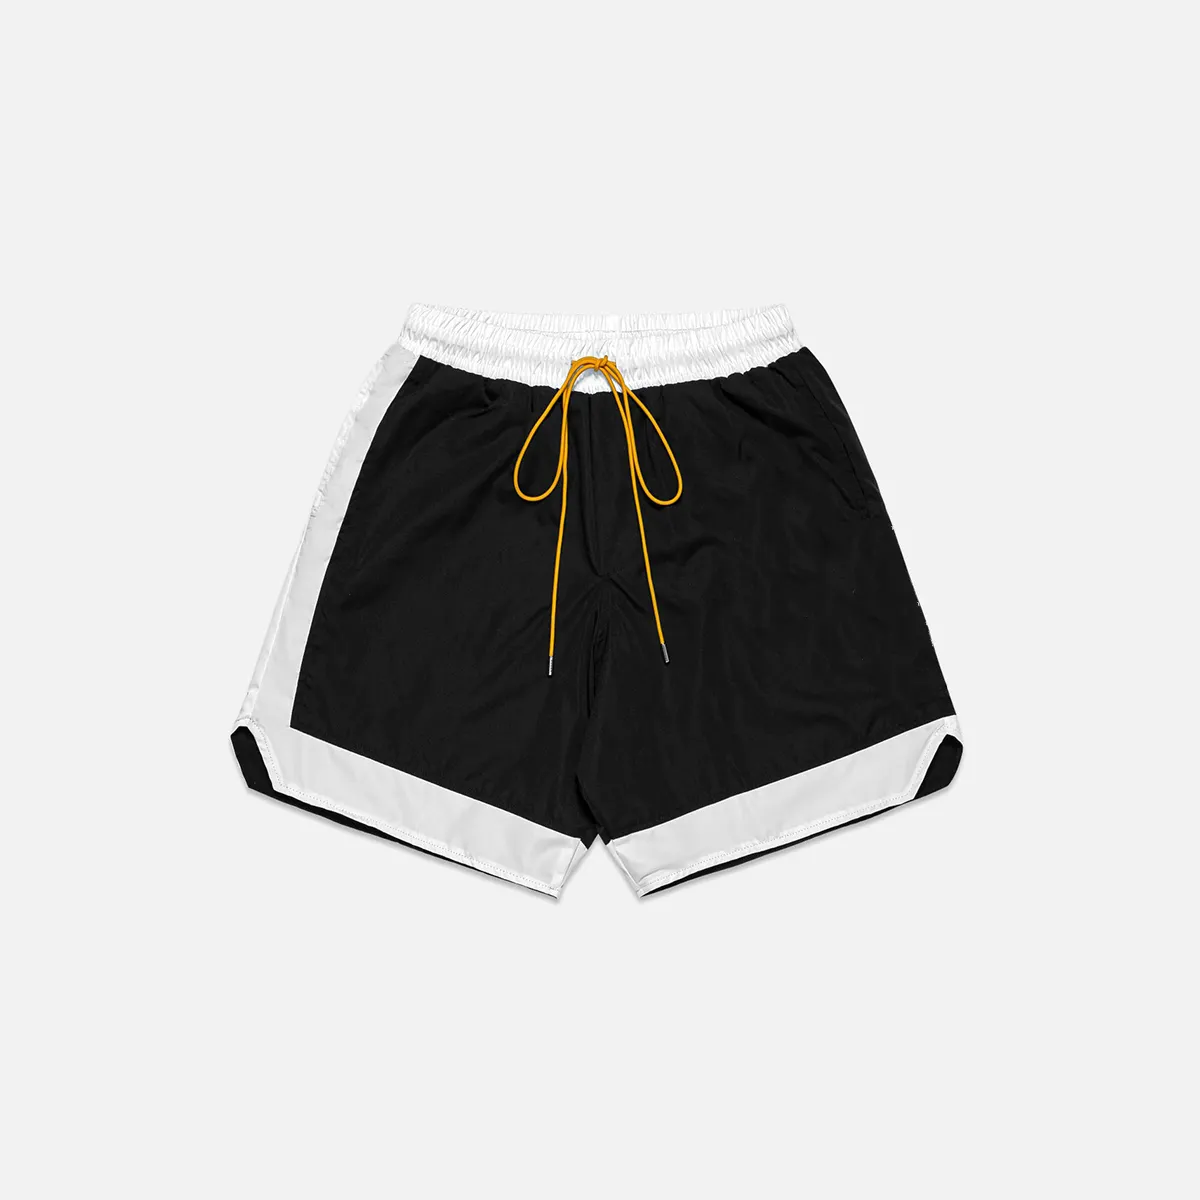 Personalizado de alta calidad de los hombres de medio pantalones de malla para Hombre Pantalones cortos de baloncesto colorido pesado poliéster negro blanco amarillo verano Casual OEM